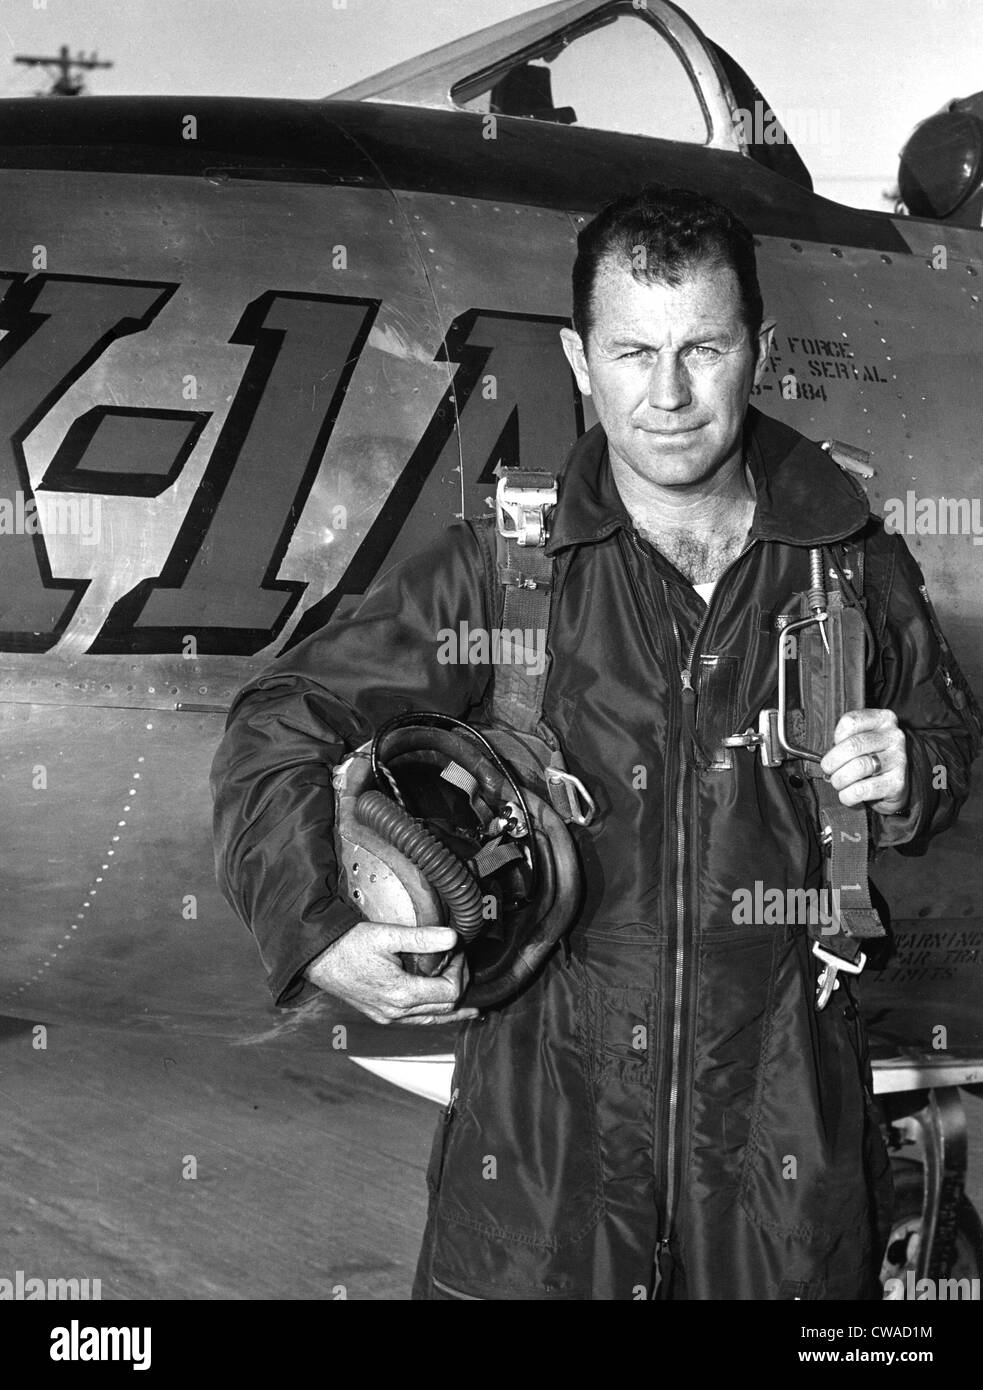 CHUCK YEAGER, con Campana X-1A in cui egli ha stabilito un record di velocità di 1650 km/h. La cortesia: CSU Archivi / Everett Collection Foto Stock